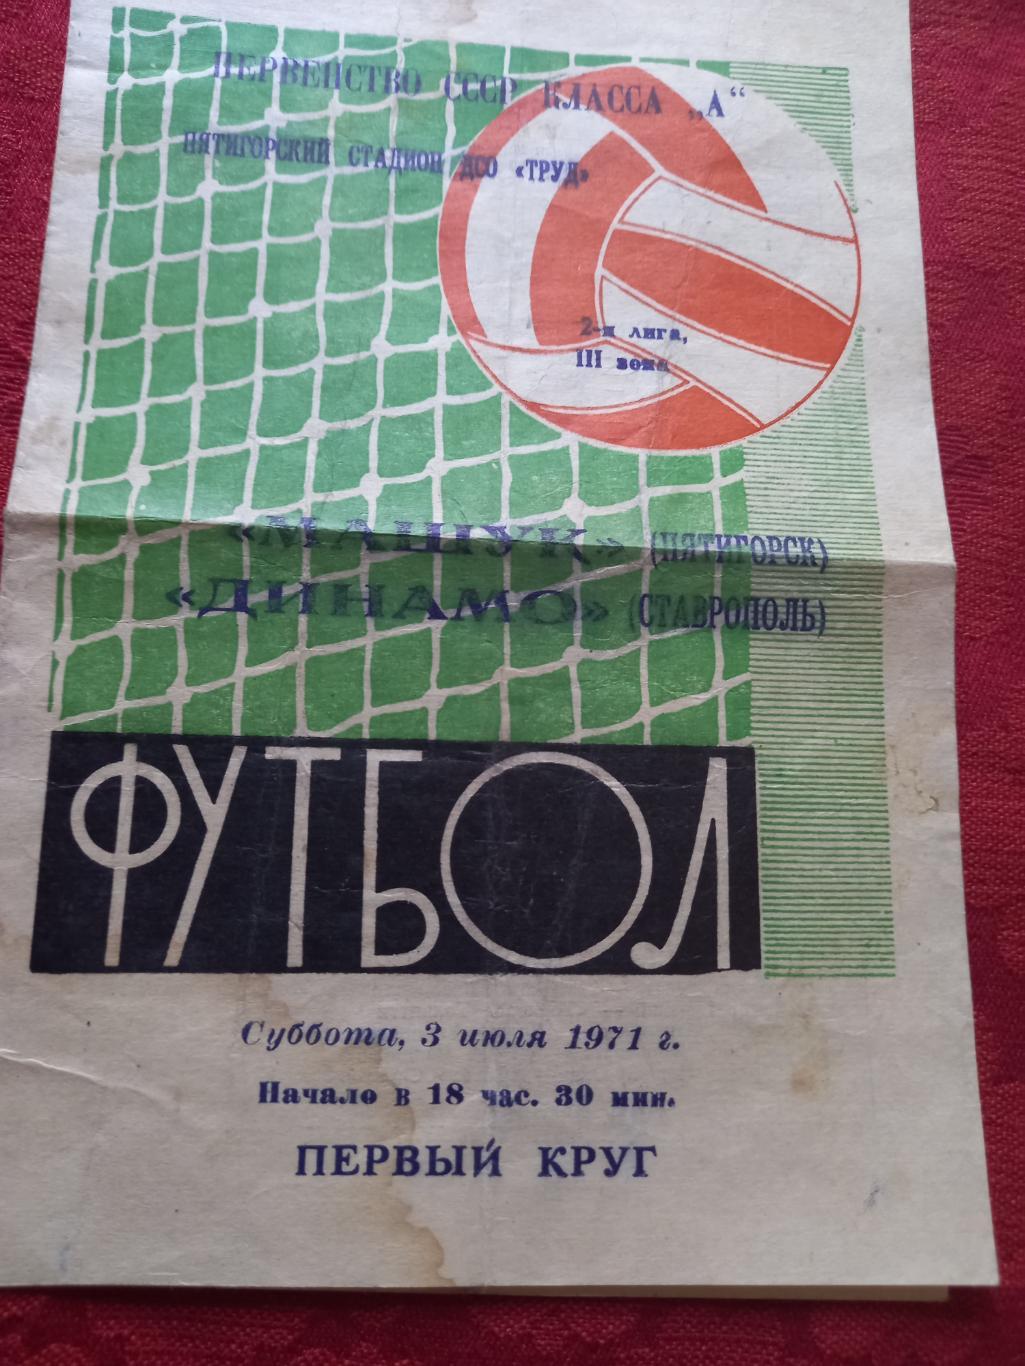 Машук Пятигорск - Динамо Ставрополь 1971г.